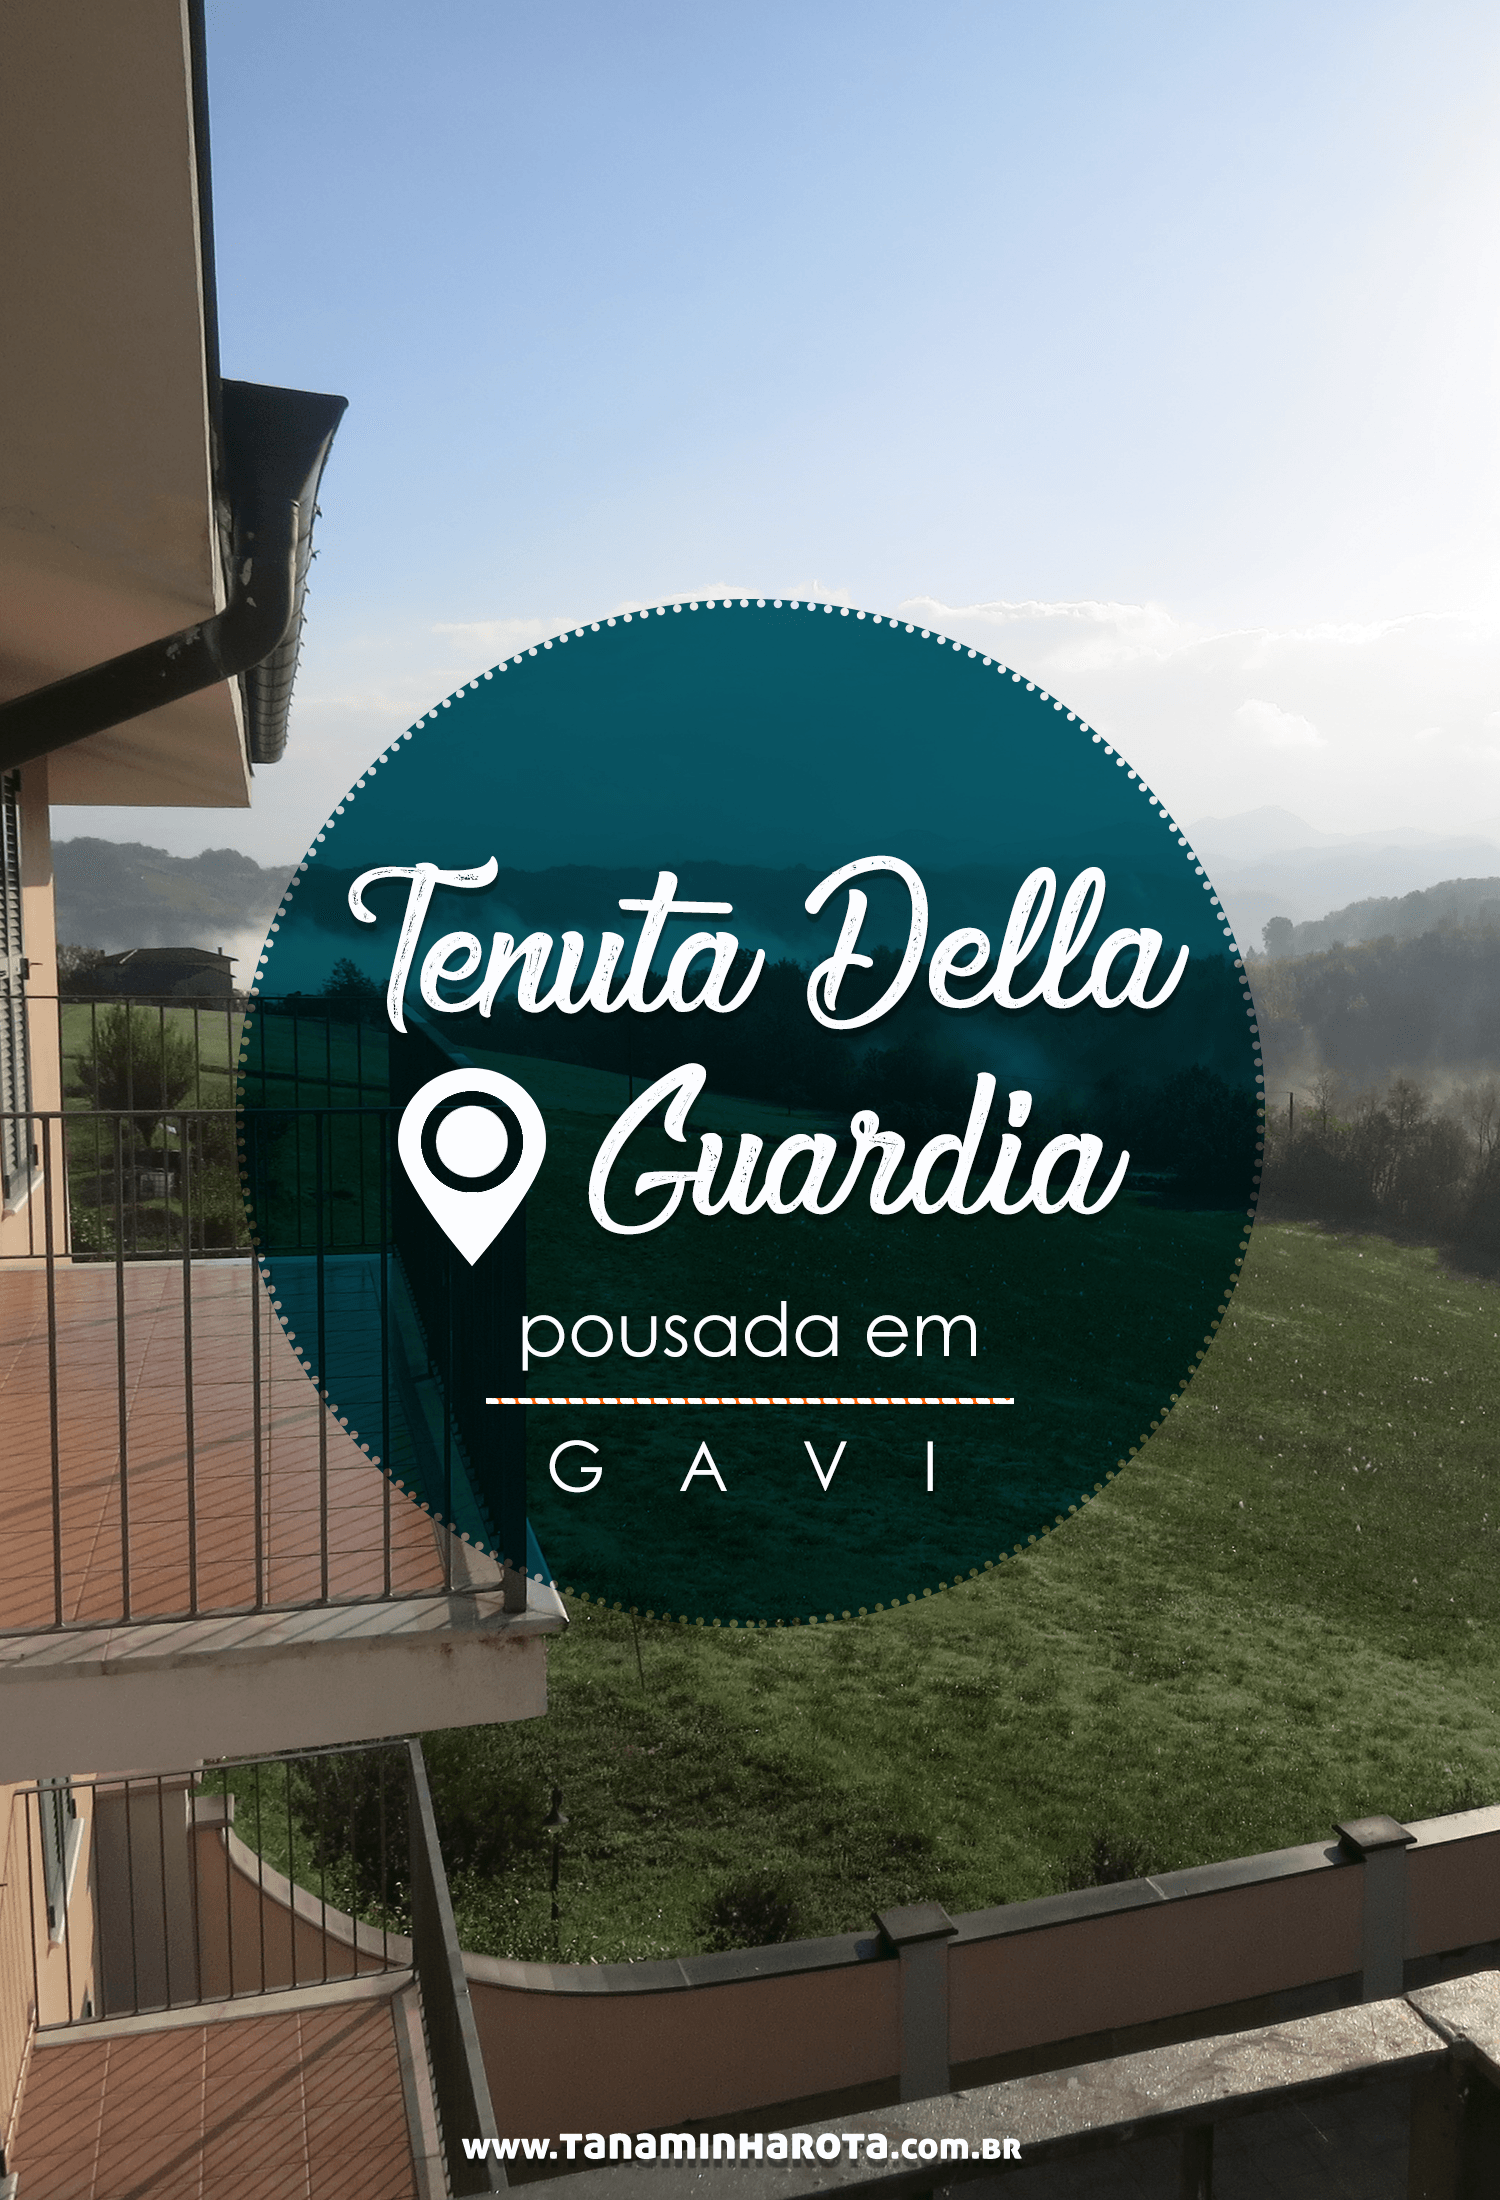 Conheça a Tenuta Della Guardia, pousada em Gavi na Itália!